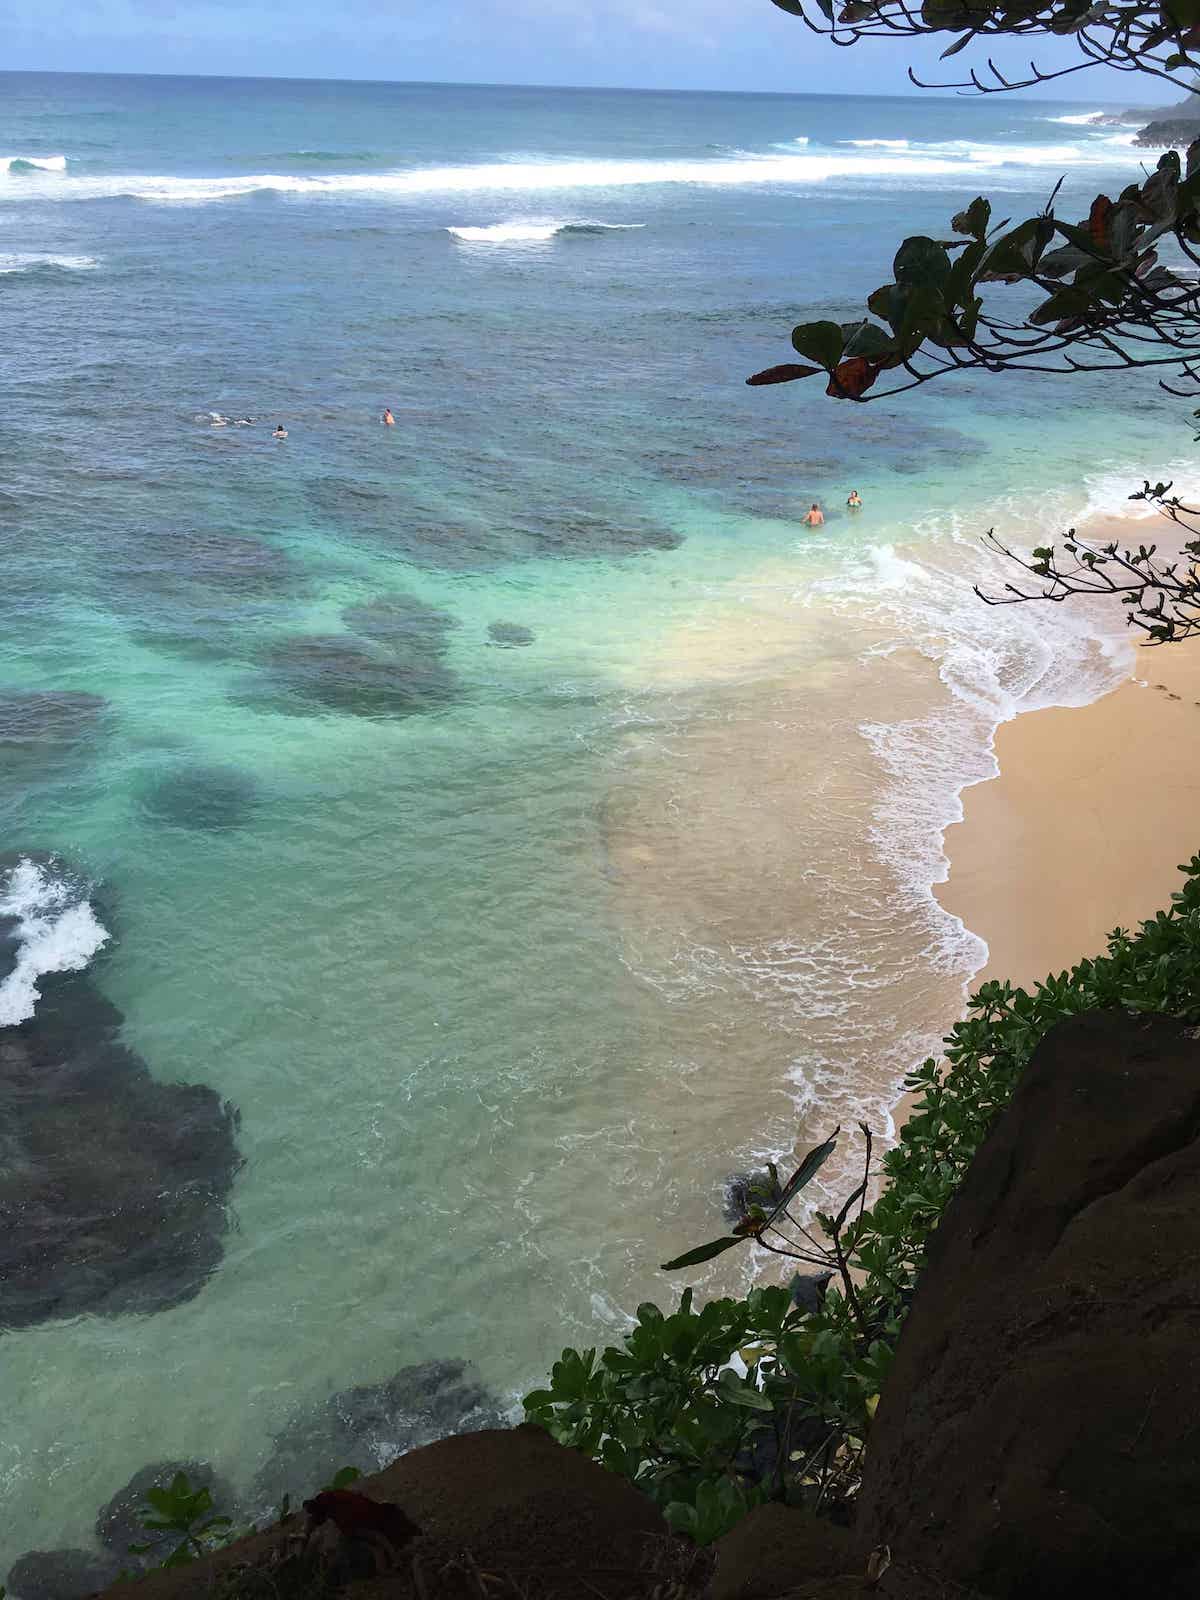 Things to do in Kauai